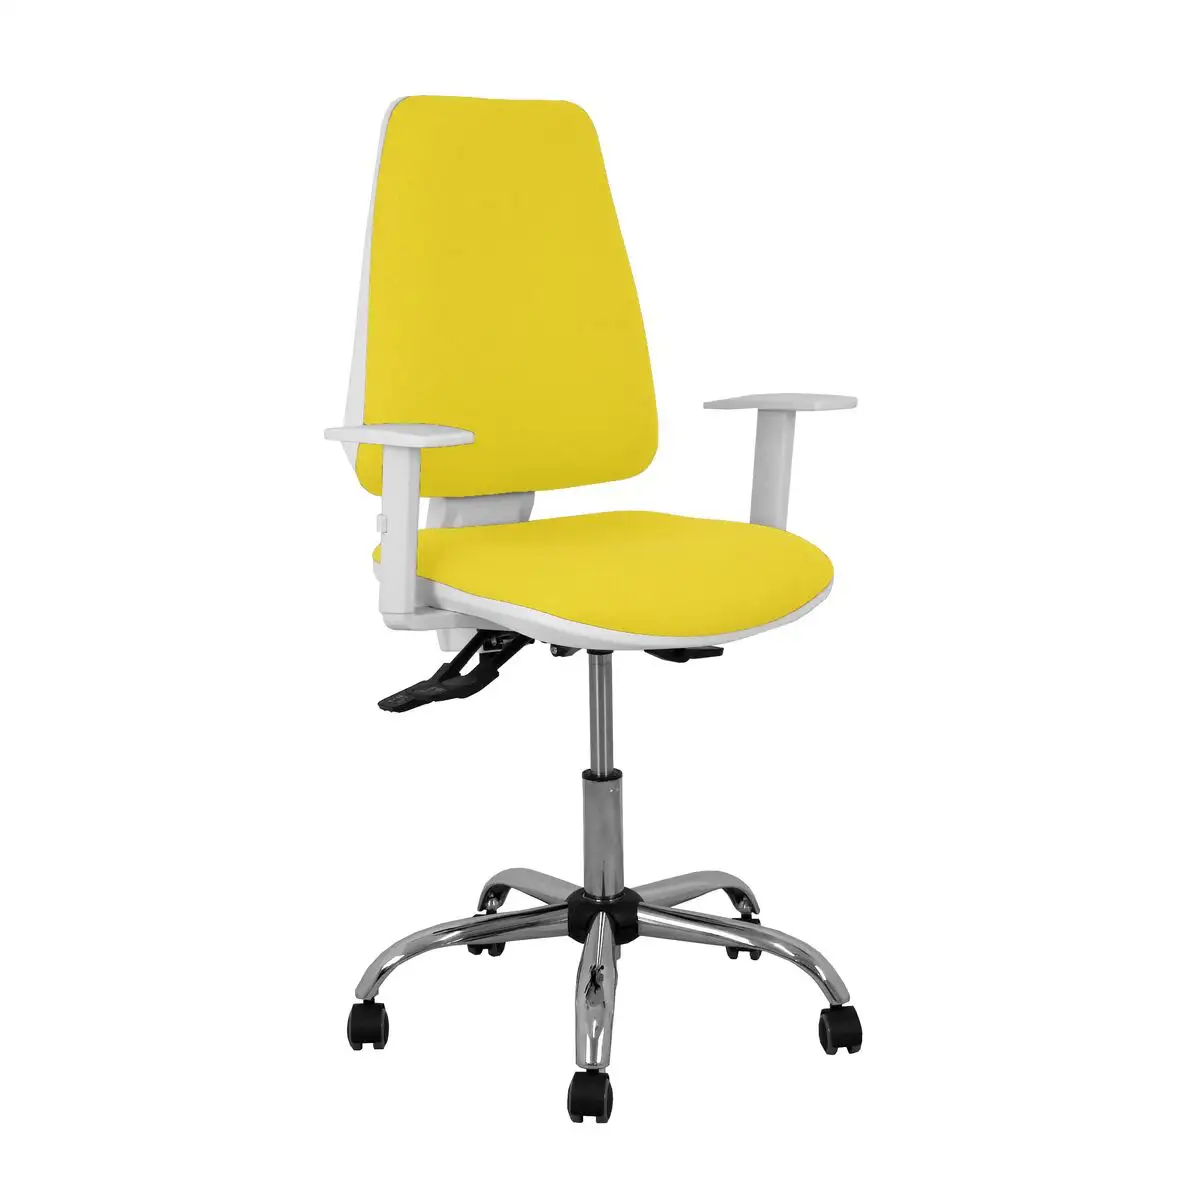 Chaise de bureau elche p c 0b5crrp jaune_7202. DIAYTAR SENEGAL - Là où l'Élégance Devient un Mode de Vie. Naviguez à travers notre gamme et choisissez des produits qui apportent une touche raffinée à votre quotidien.